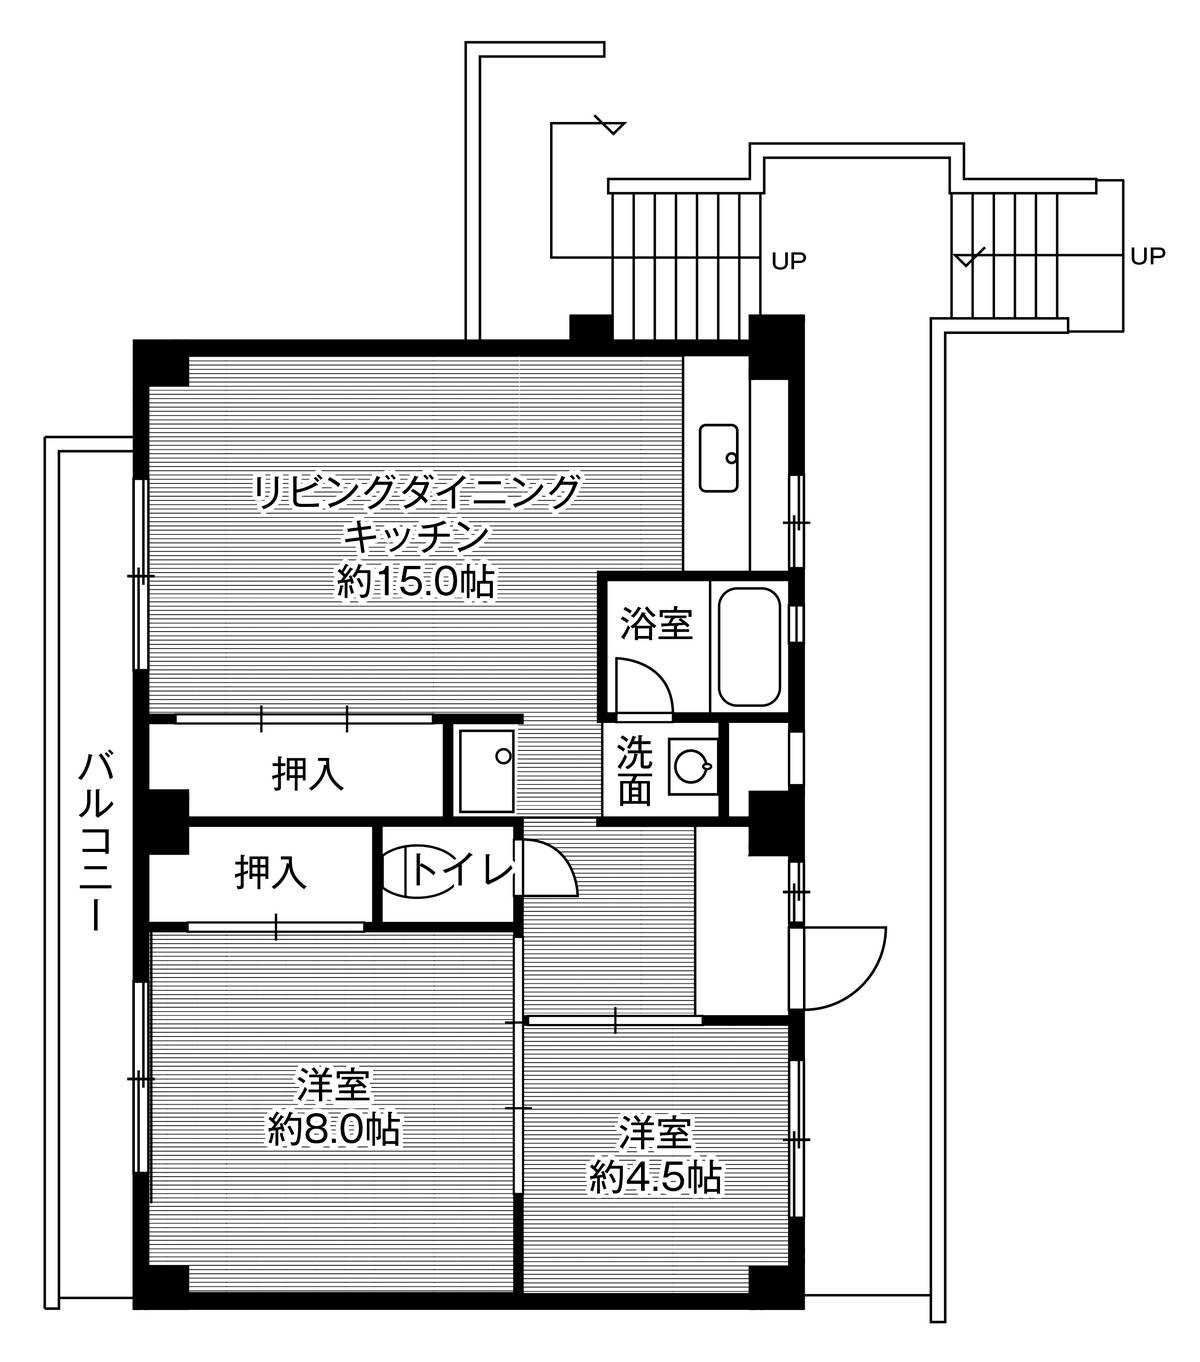 Sơ đồ phòng 2LDK của Village House Shimogoi ở Toyohashi-shi